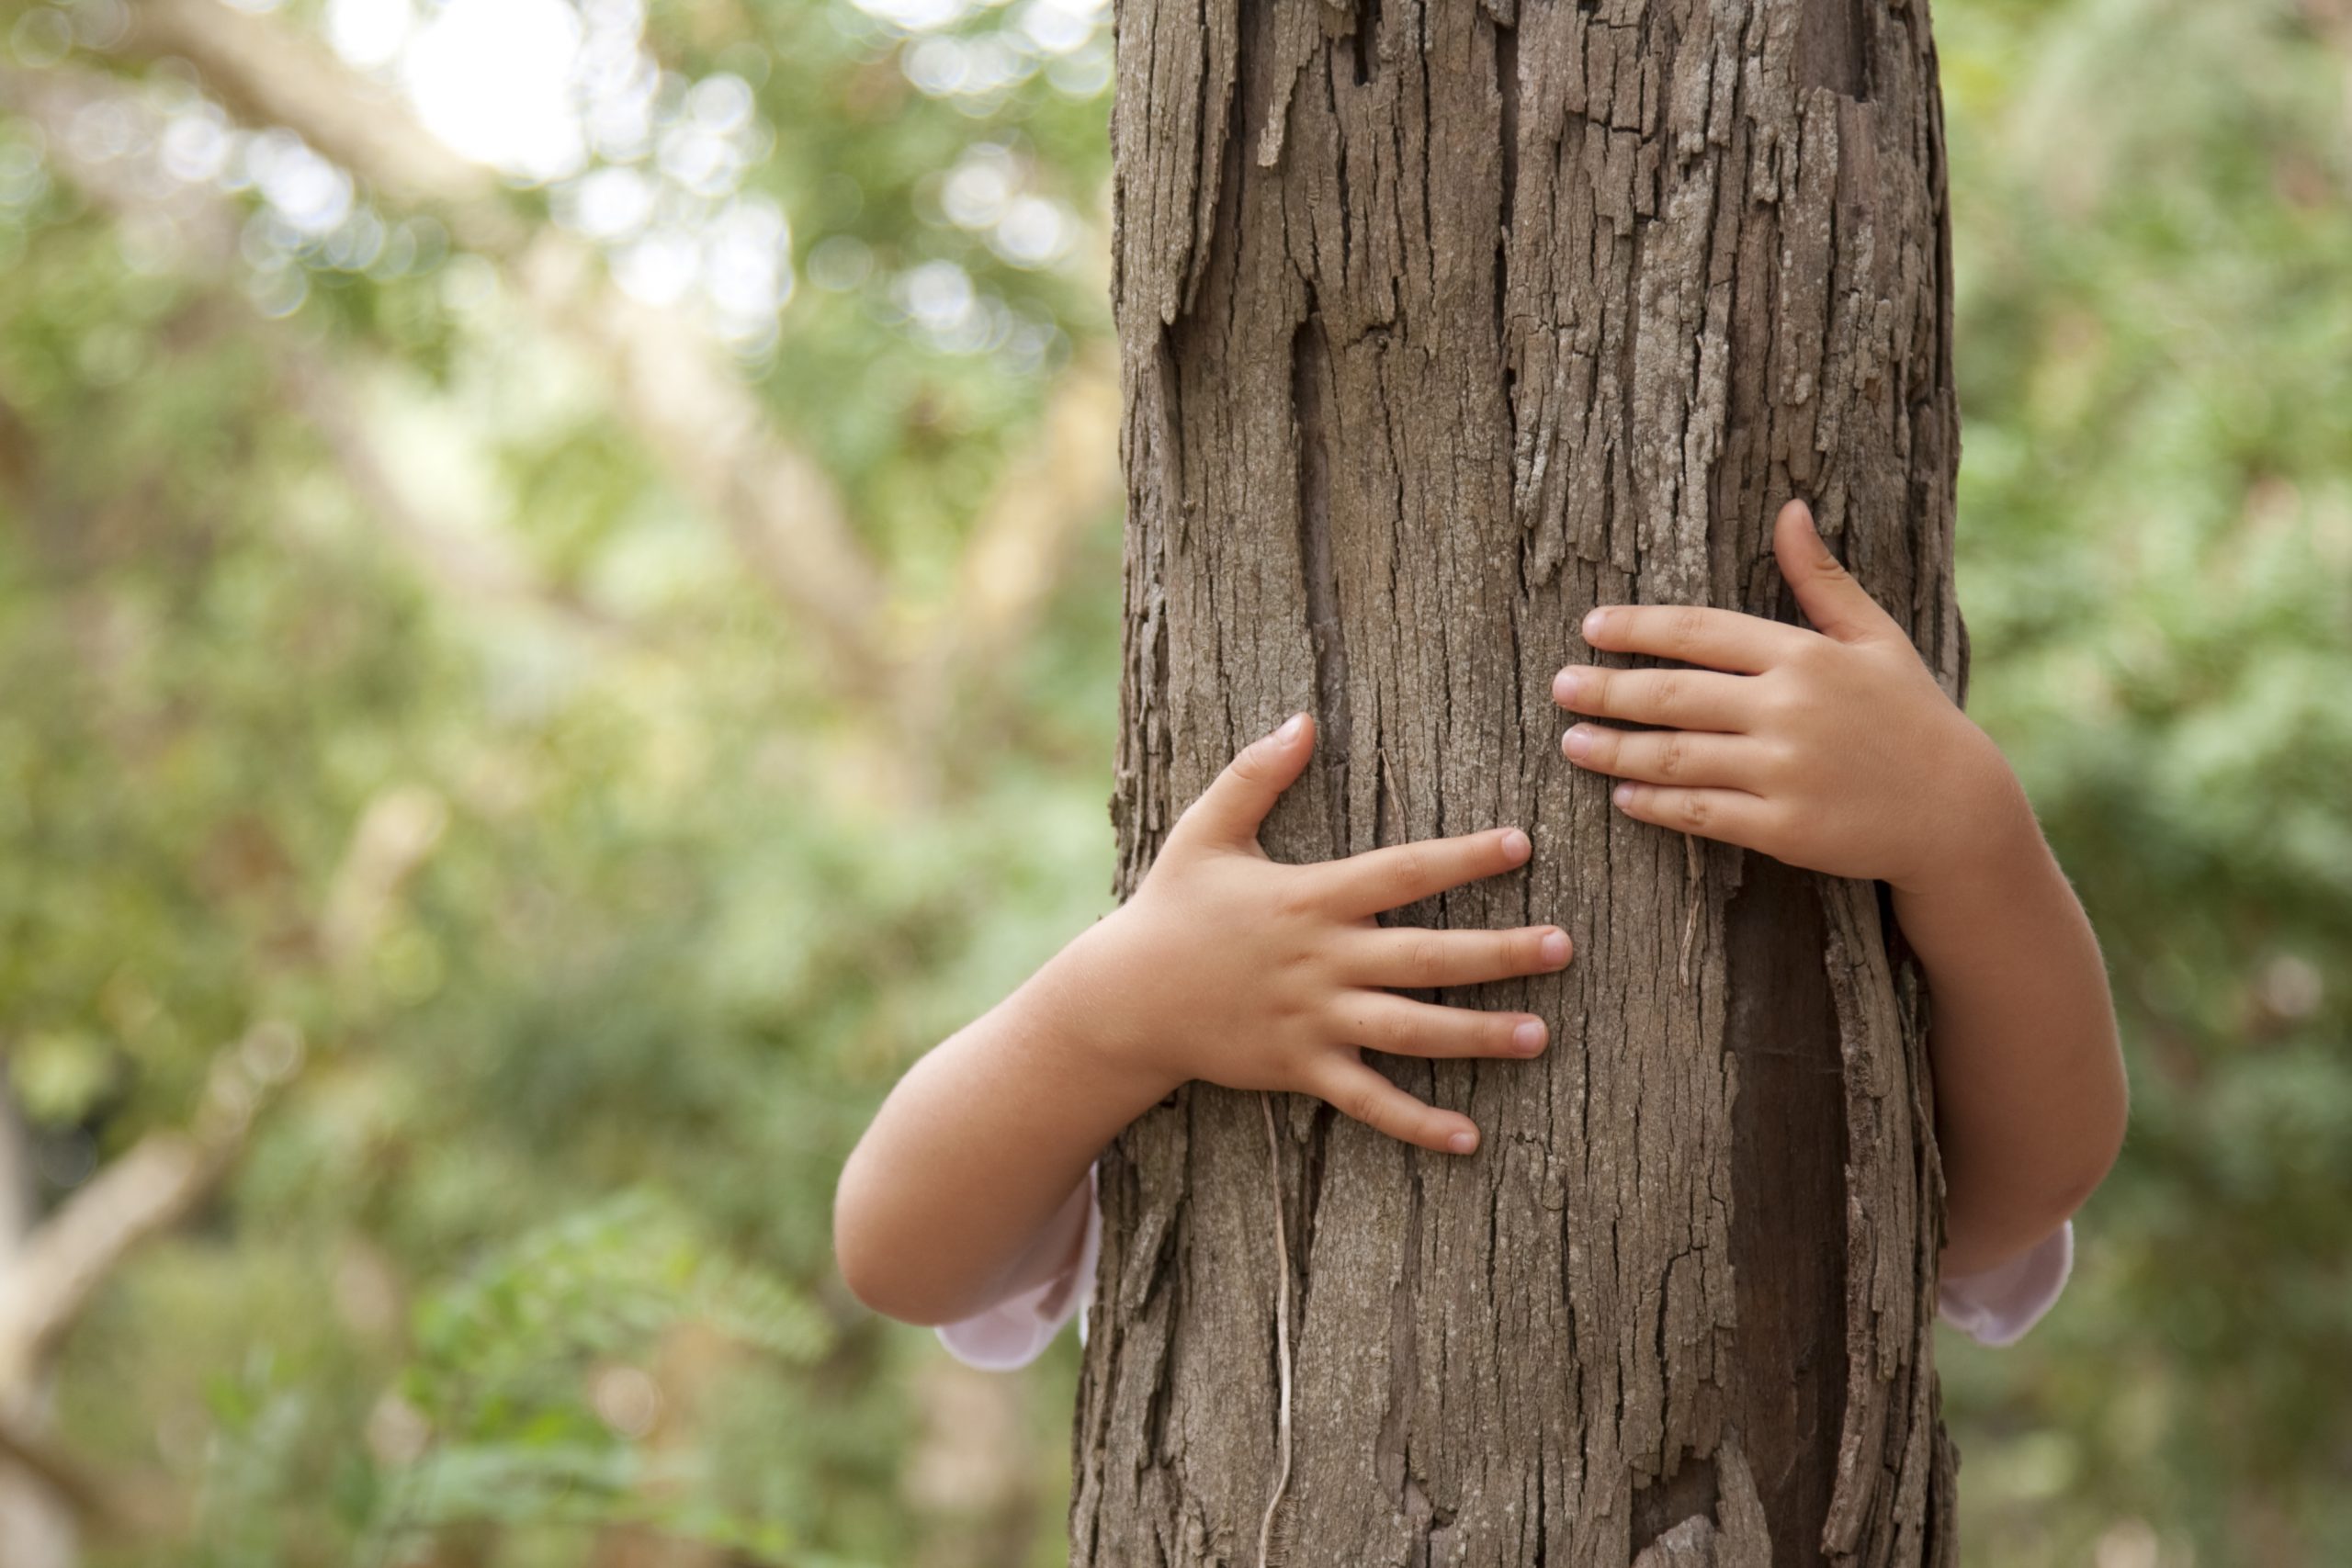 children's hand around a tree trunk